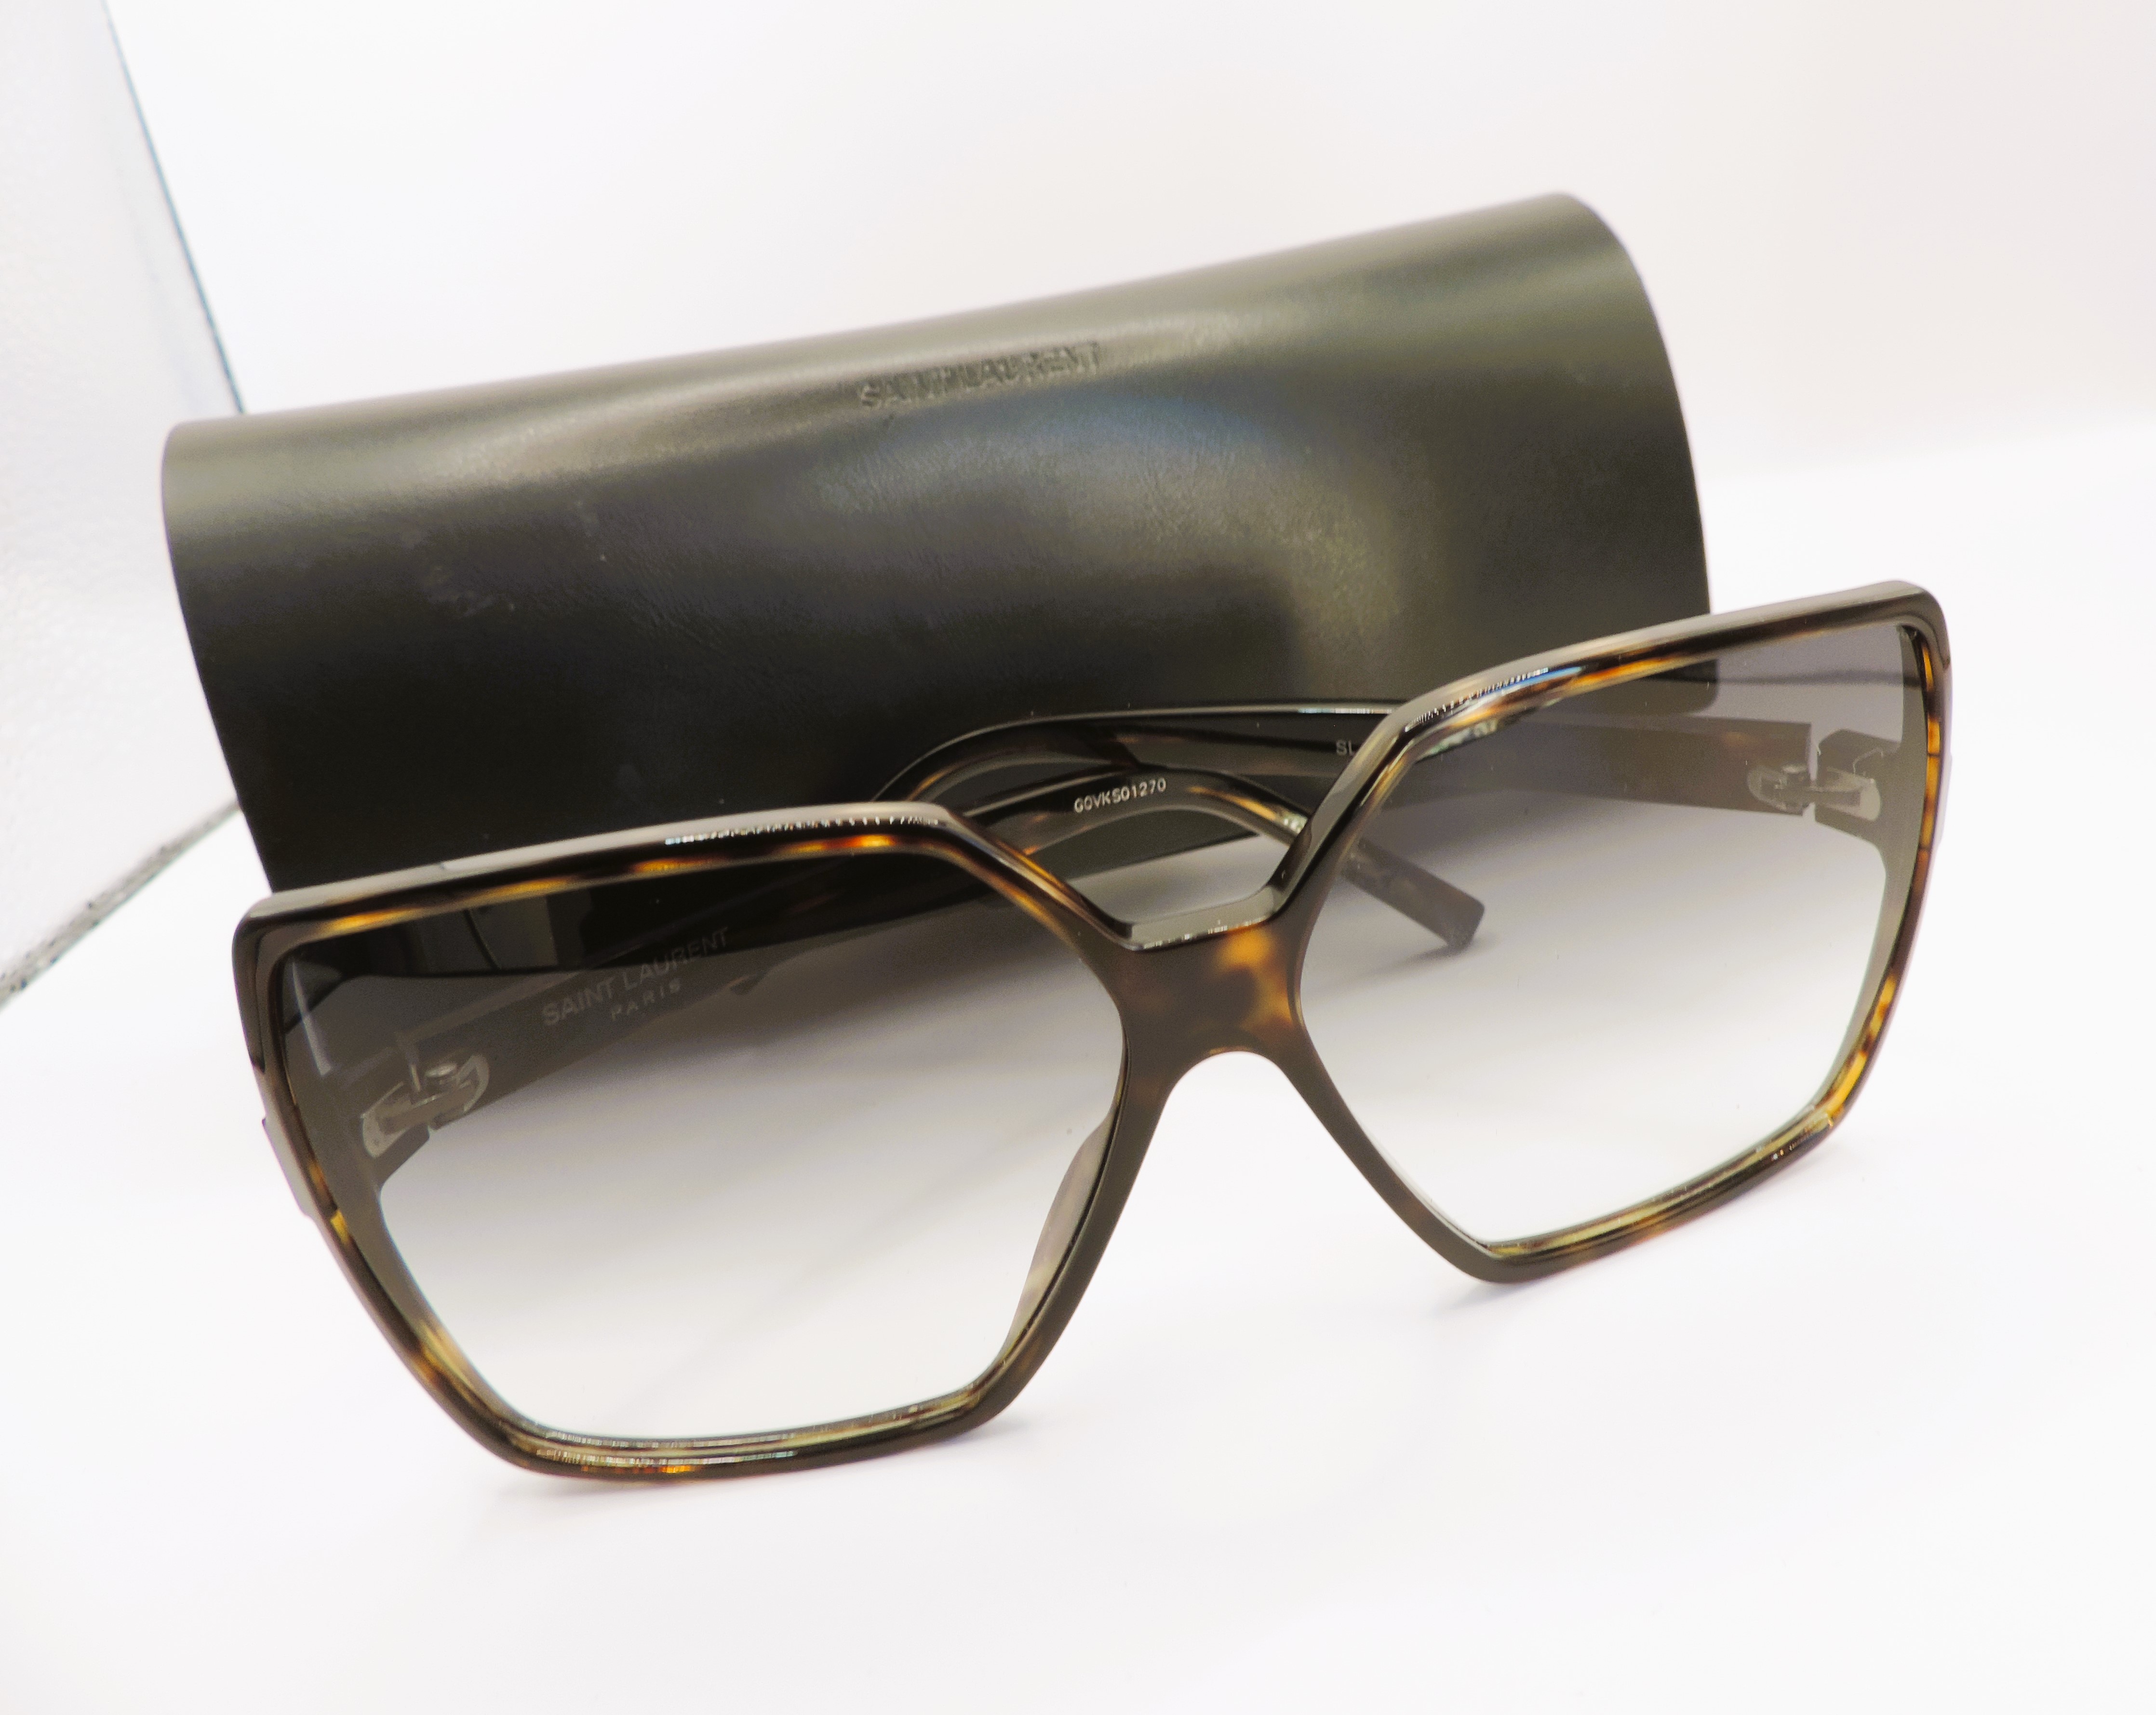 Saint Laurent Paris 'BETTY' SL232 Havanah Framed Sunglasses New With Case